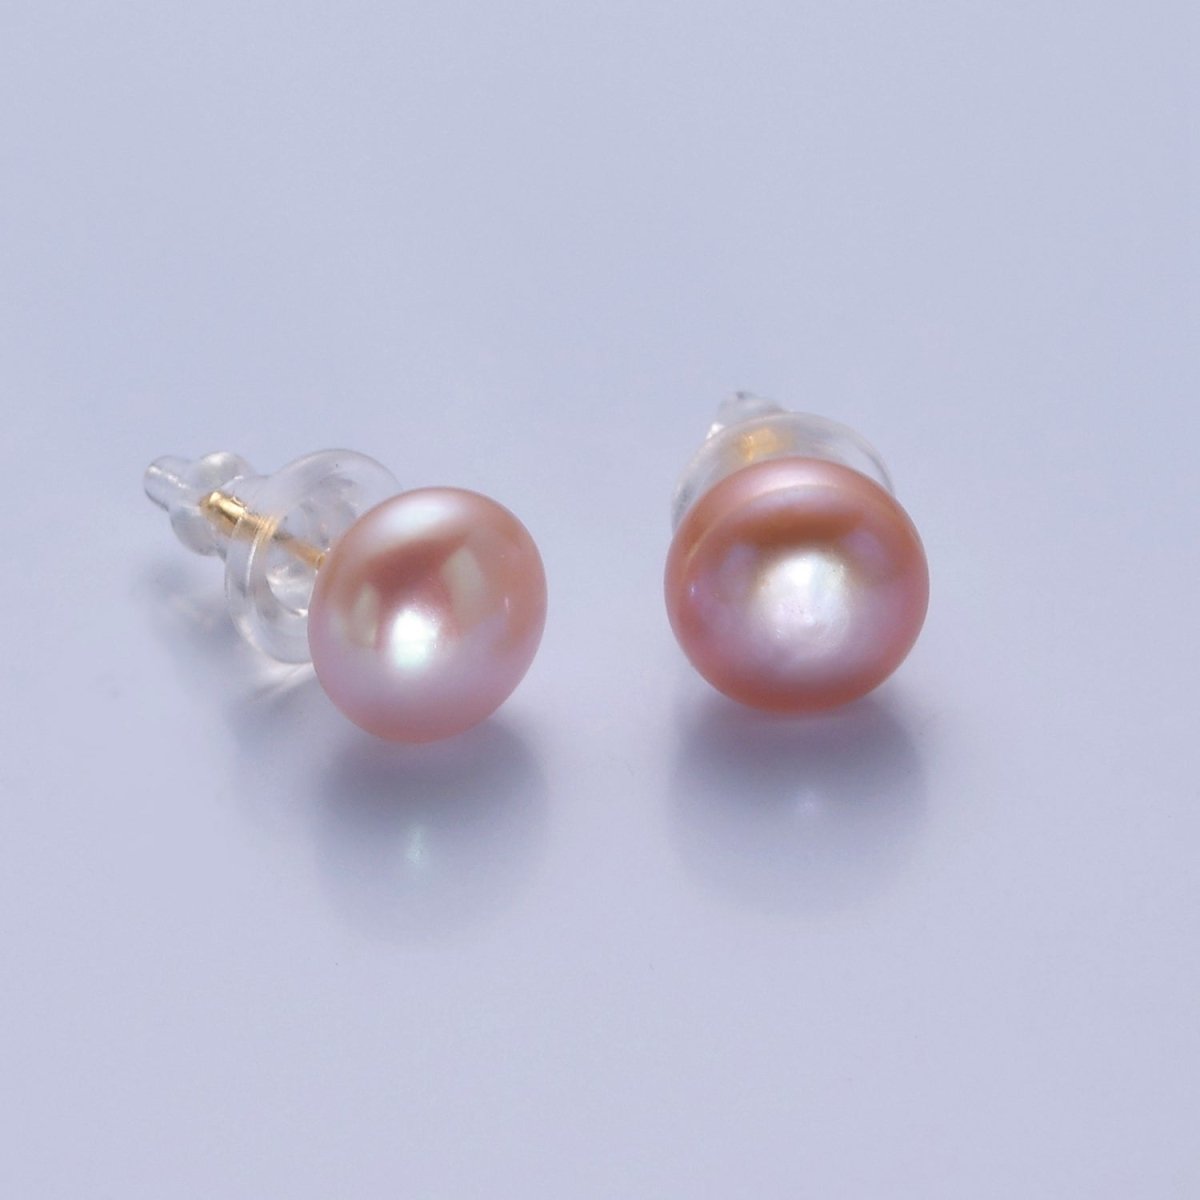 Minimalist Gold Pearl Studs Earrings | 9mm-9.5mm Round Black, White, Pink, Purple Pearl Stud | Bridal, Graduation, Streetwear Jewelry | T-367 T-368 T-369 T-370 - DLUXCA